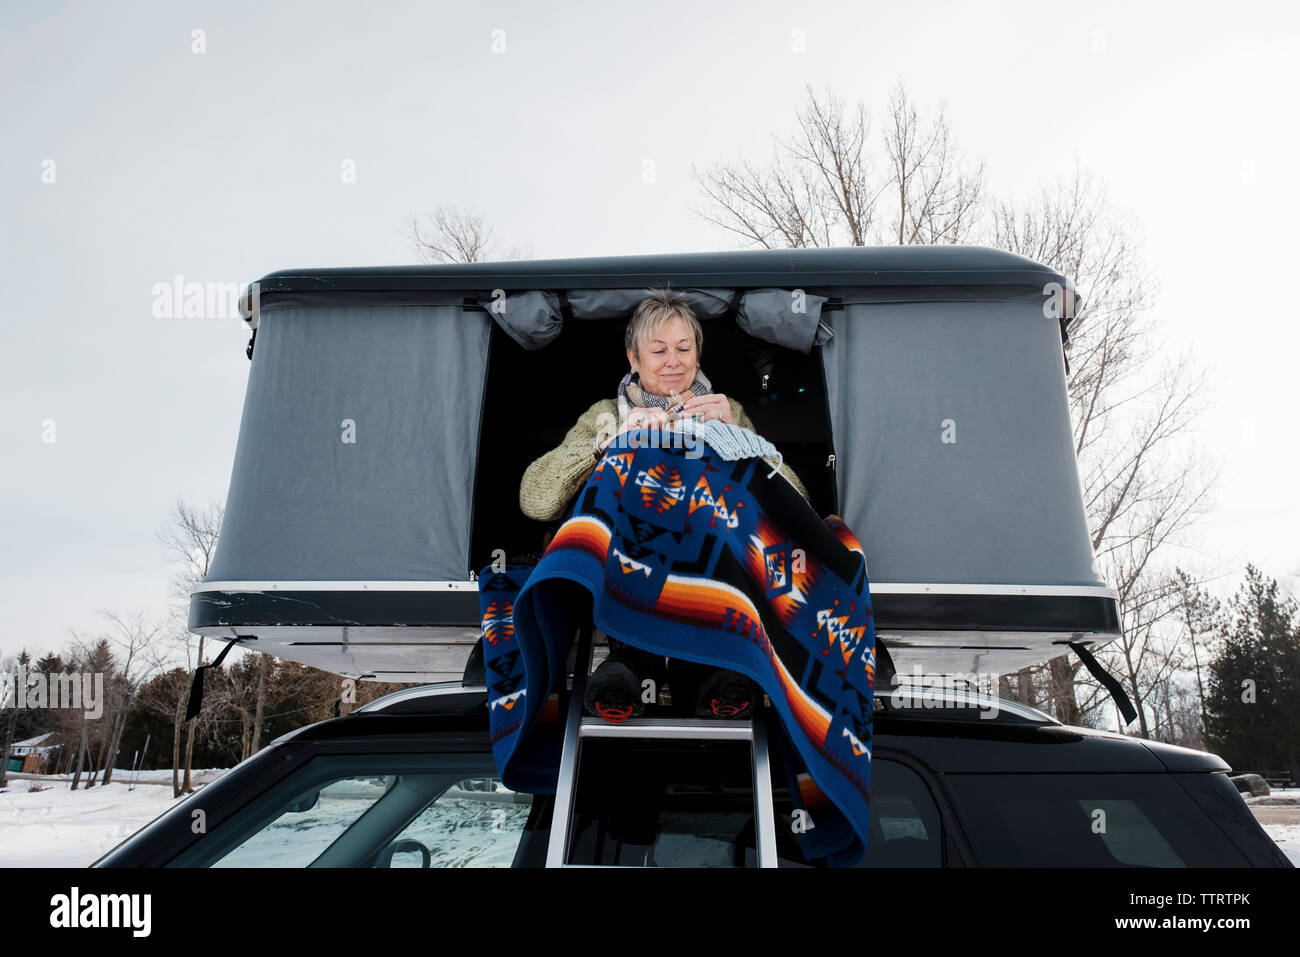 Basso angolo di visione della donna maglia mentre è seduto nella tenda del tetto sulla vettura durante il periodo invernale Foto Stock